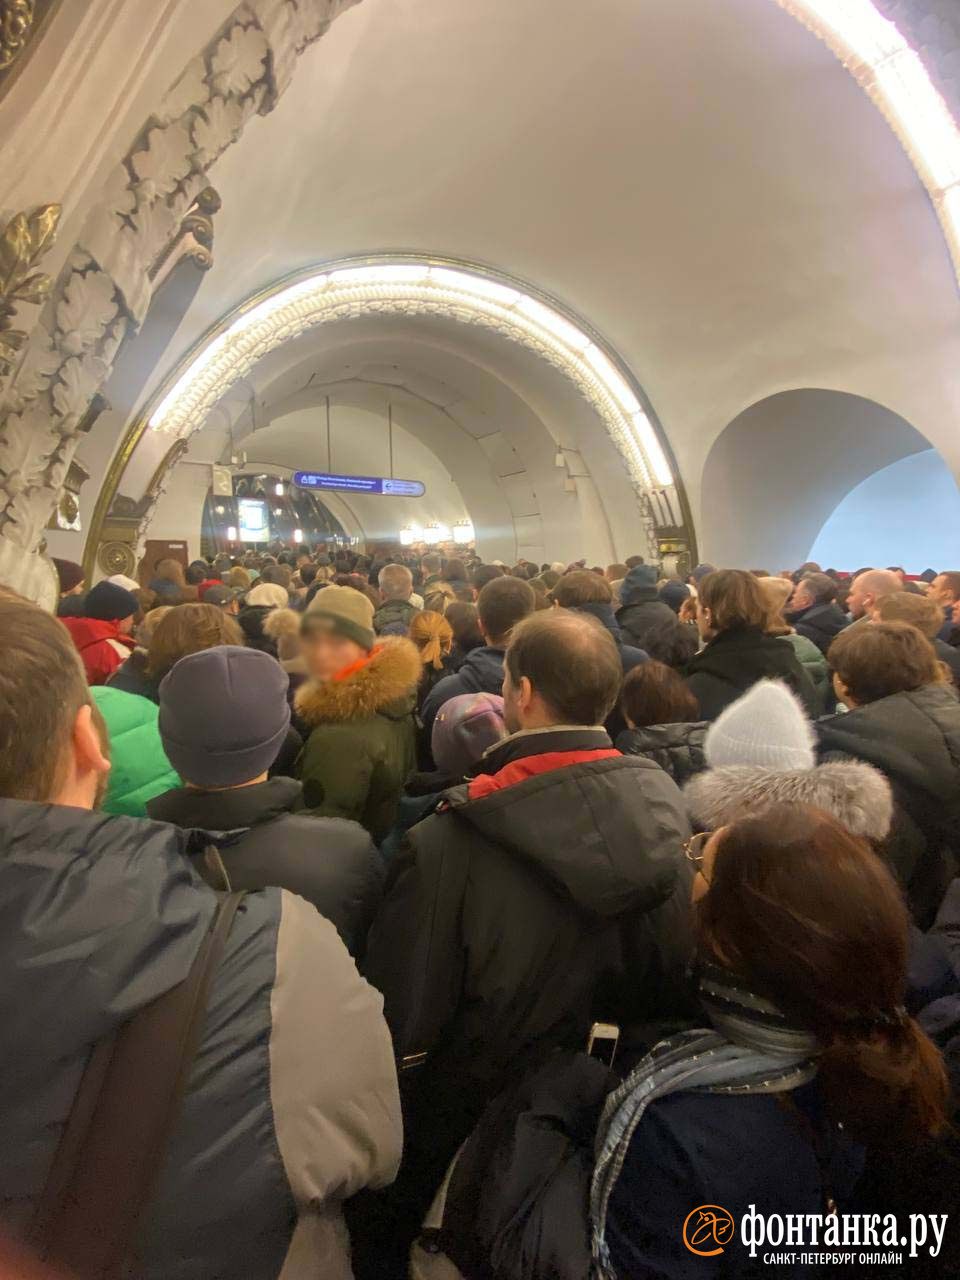 Станцию метро «Площадь Восстания» всё-таки закрыли на вход